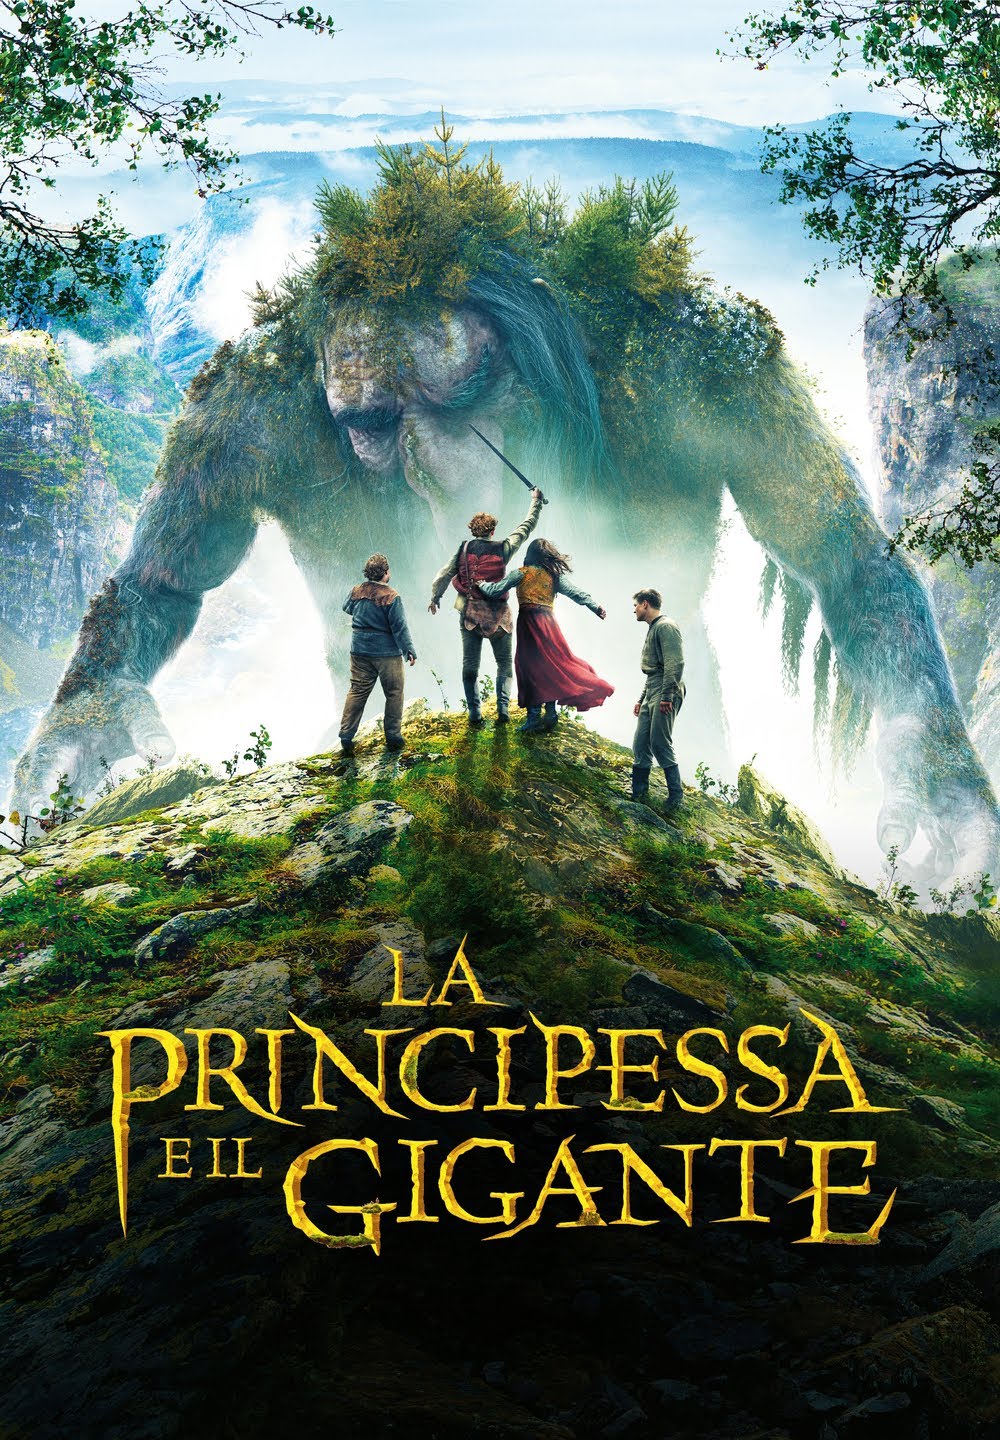 La principessa e il gigante [HD] (2017)